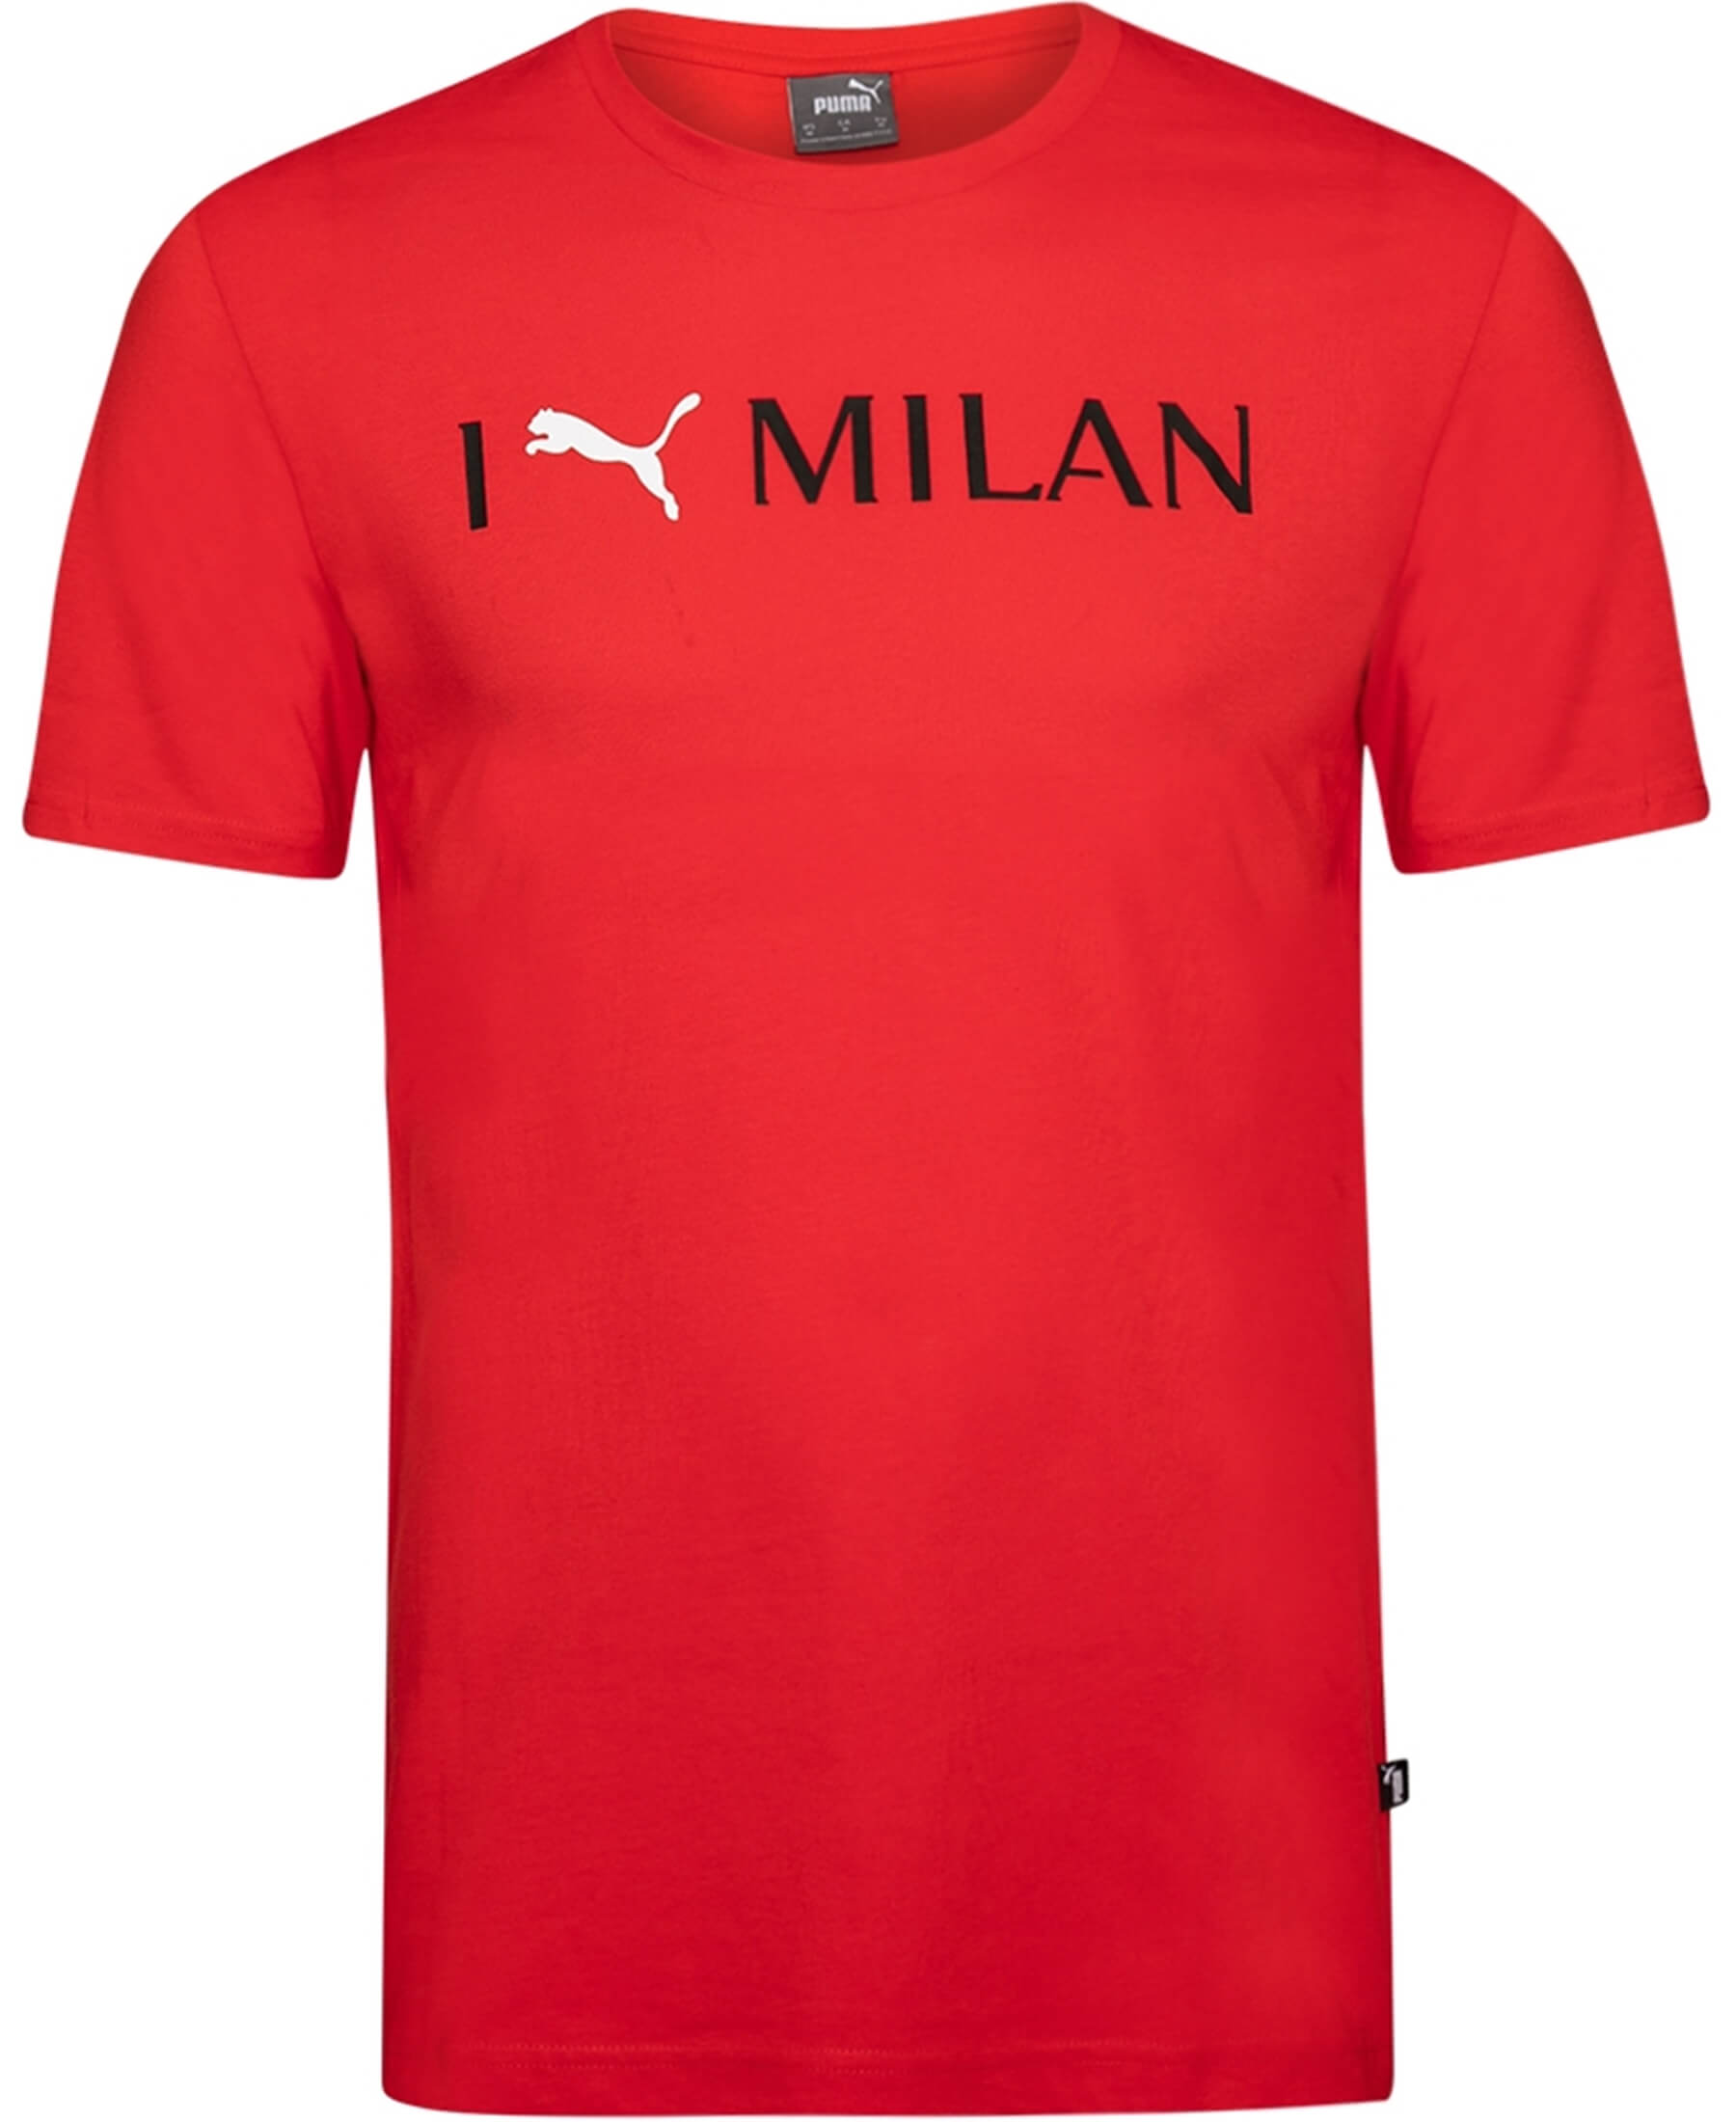 Entdecke das PUMA AC Mailand ACM Travel T-Shirt auf SHOP4TEAMSPORT. Dieses offizielle Fan-T-Shirt ist perfekt für Reisen und den Alltag. Mit seinem stilvollen Design und bequemen Schnitt zeigt es deine Leidenschaft für den AC Mailand. Das weiche Material sorgt für hohen Tragekomfort. Zeige deine Unterstützung mit dem Vereinslogo auf der Brust. Hol dir dieses authentische T-Shirt und sei stolz auf deine Verbundenheit zum AC Mailand.